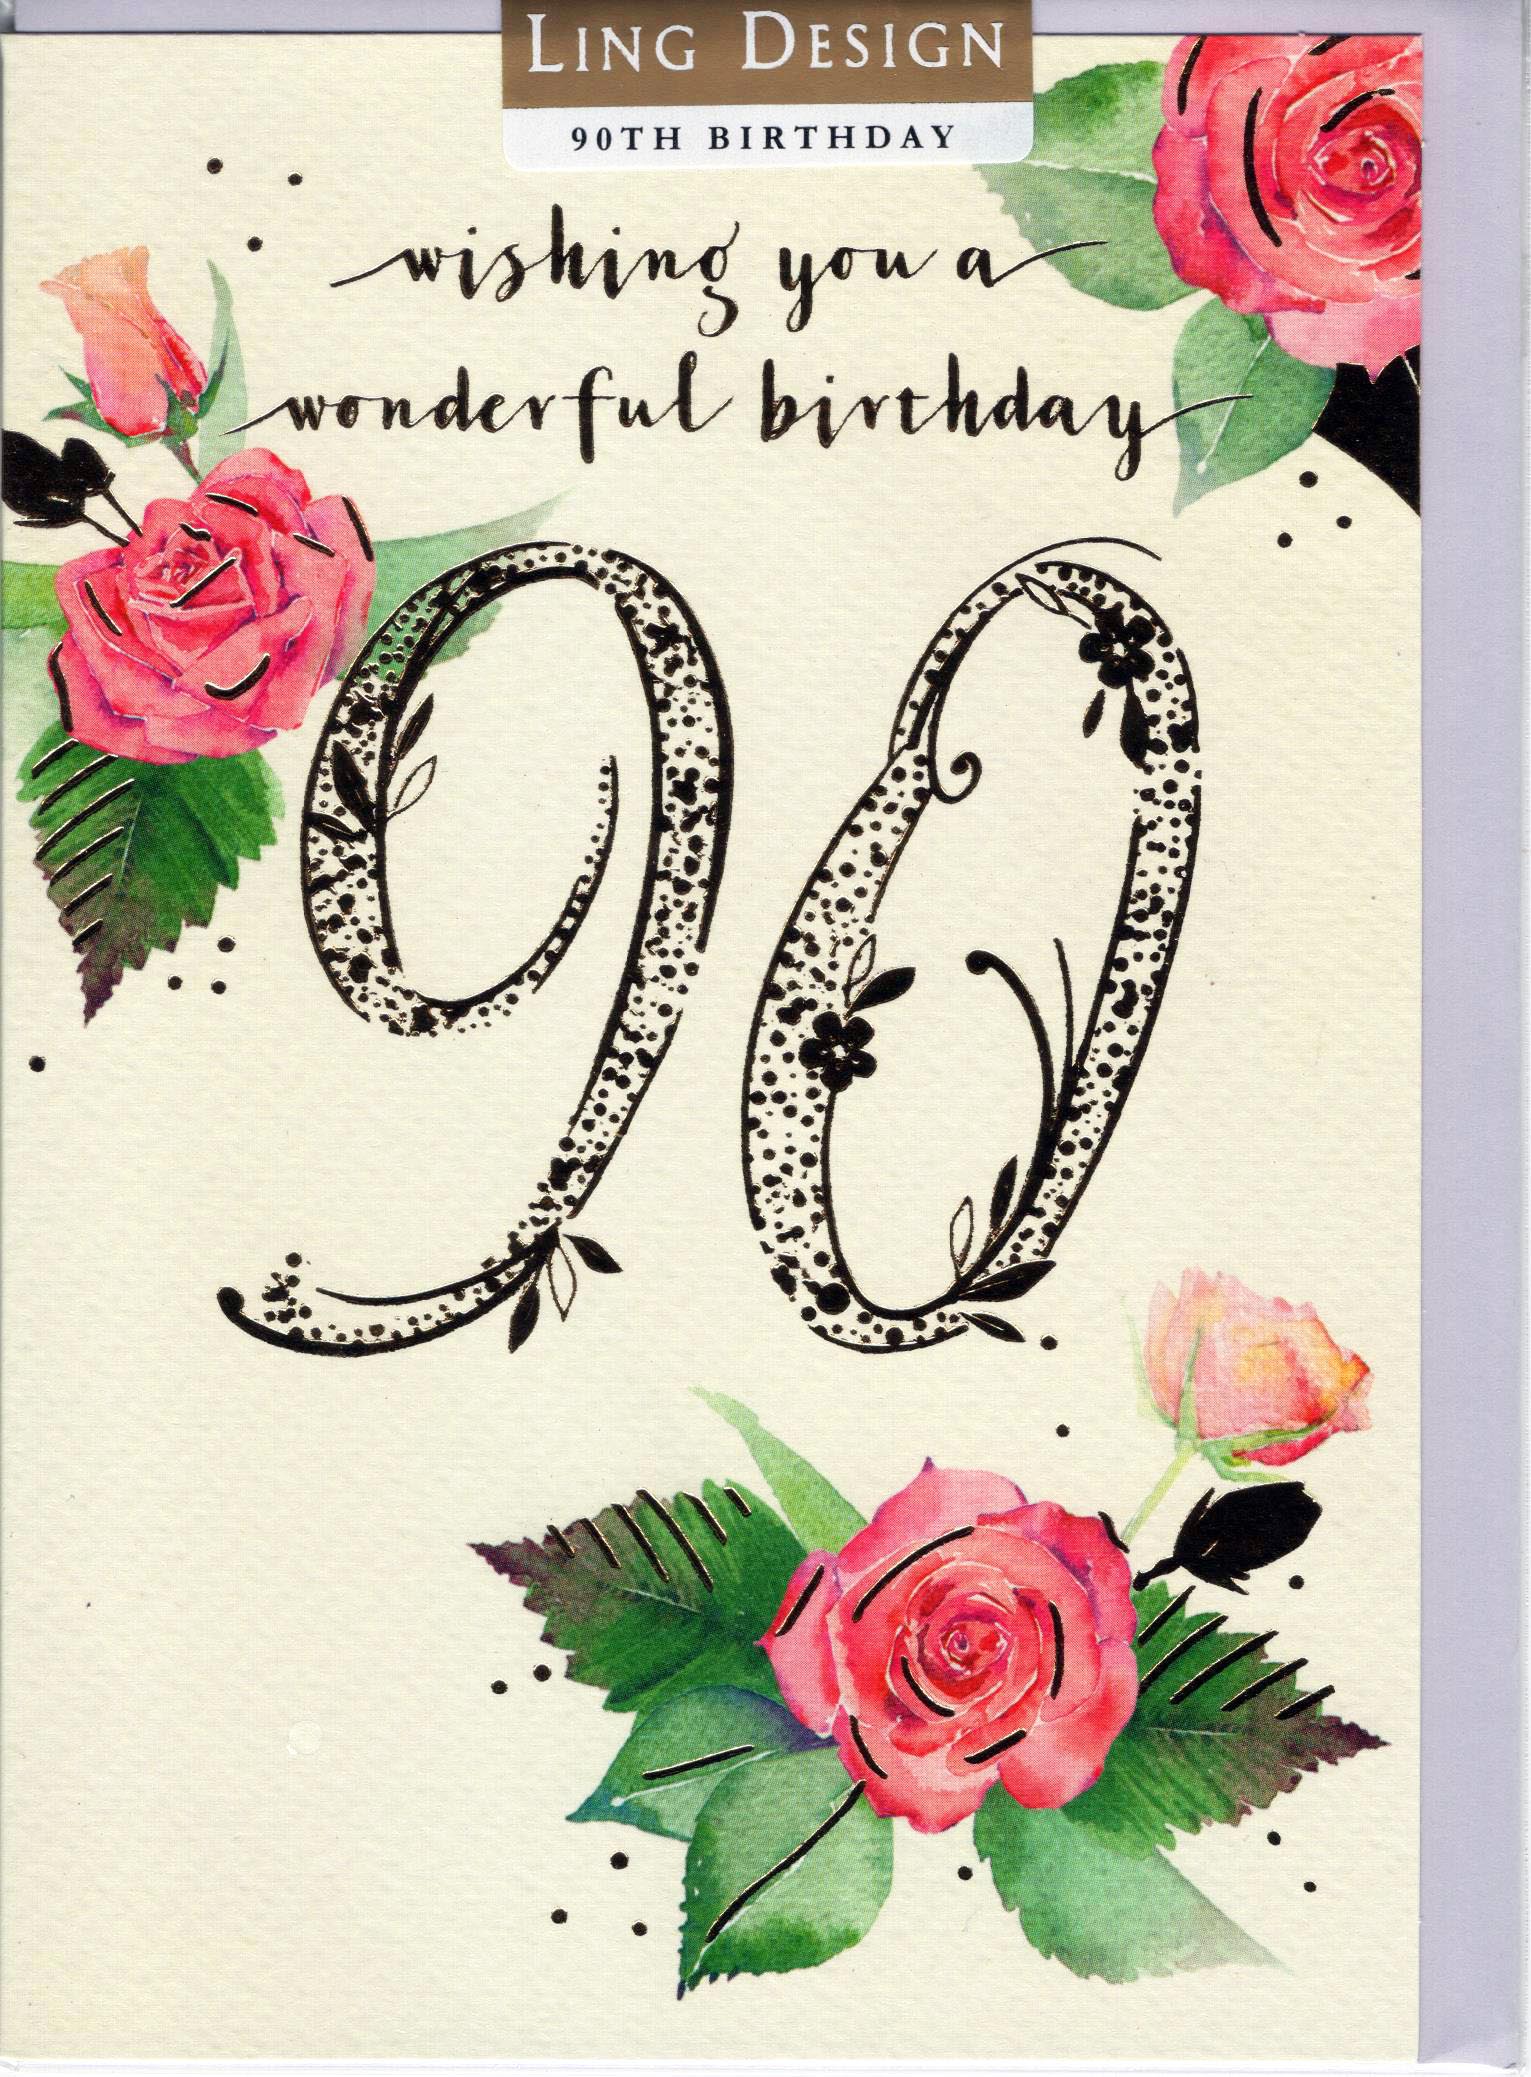 Wishing You a Wonderful Birthday 90